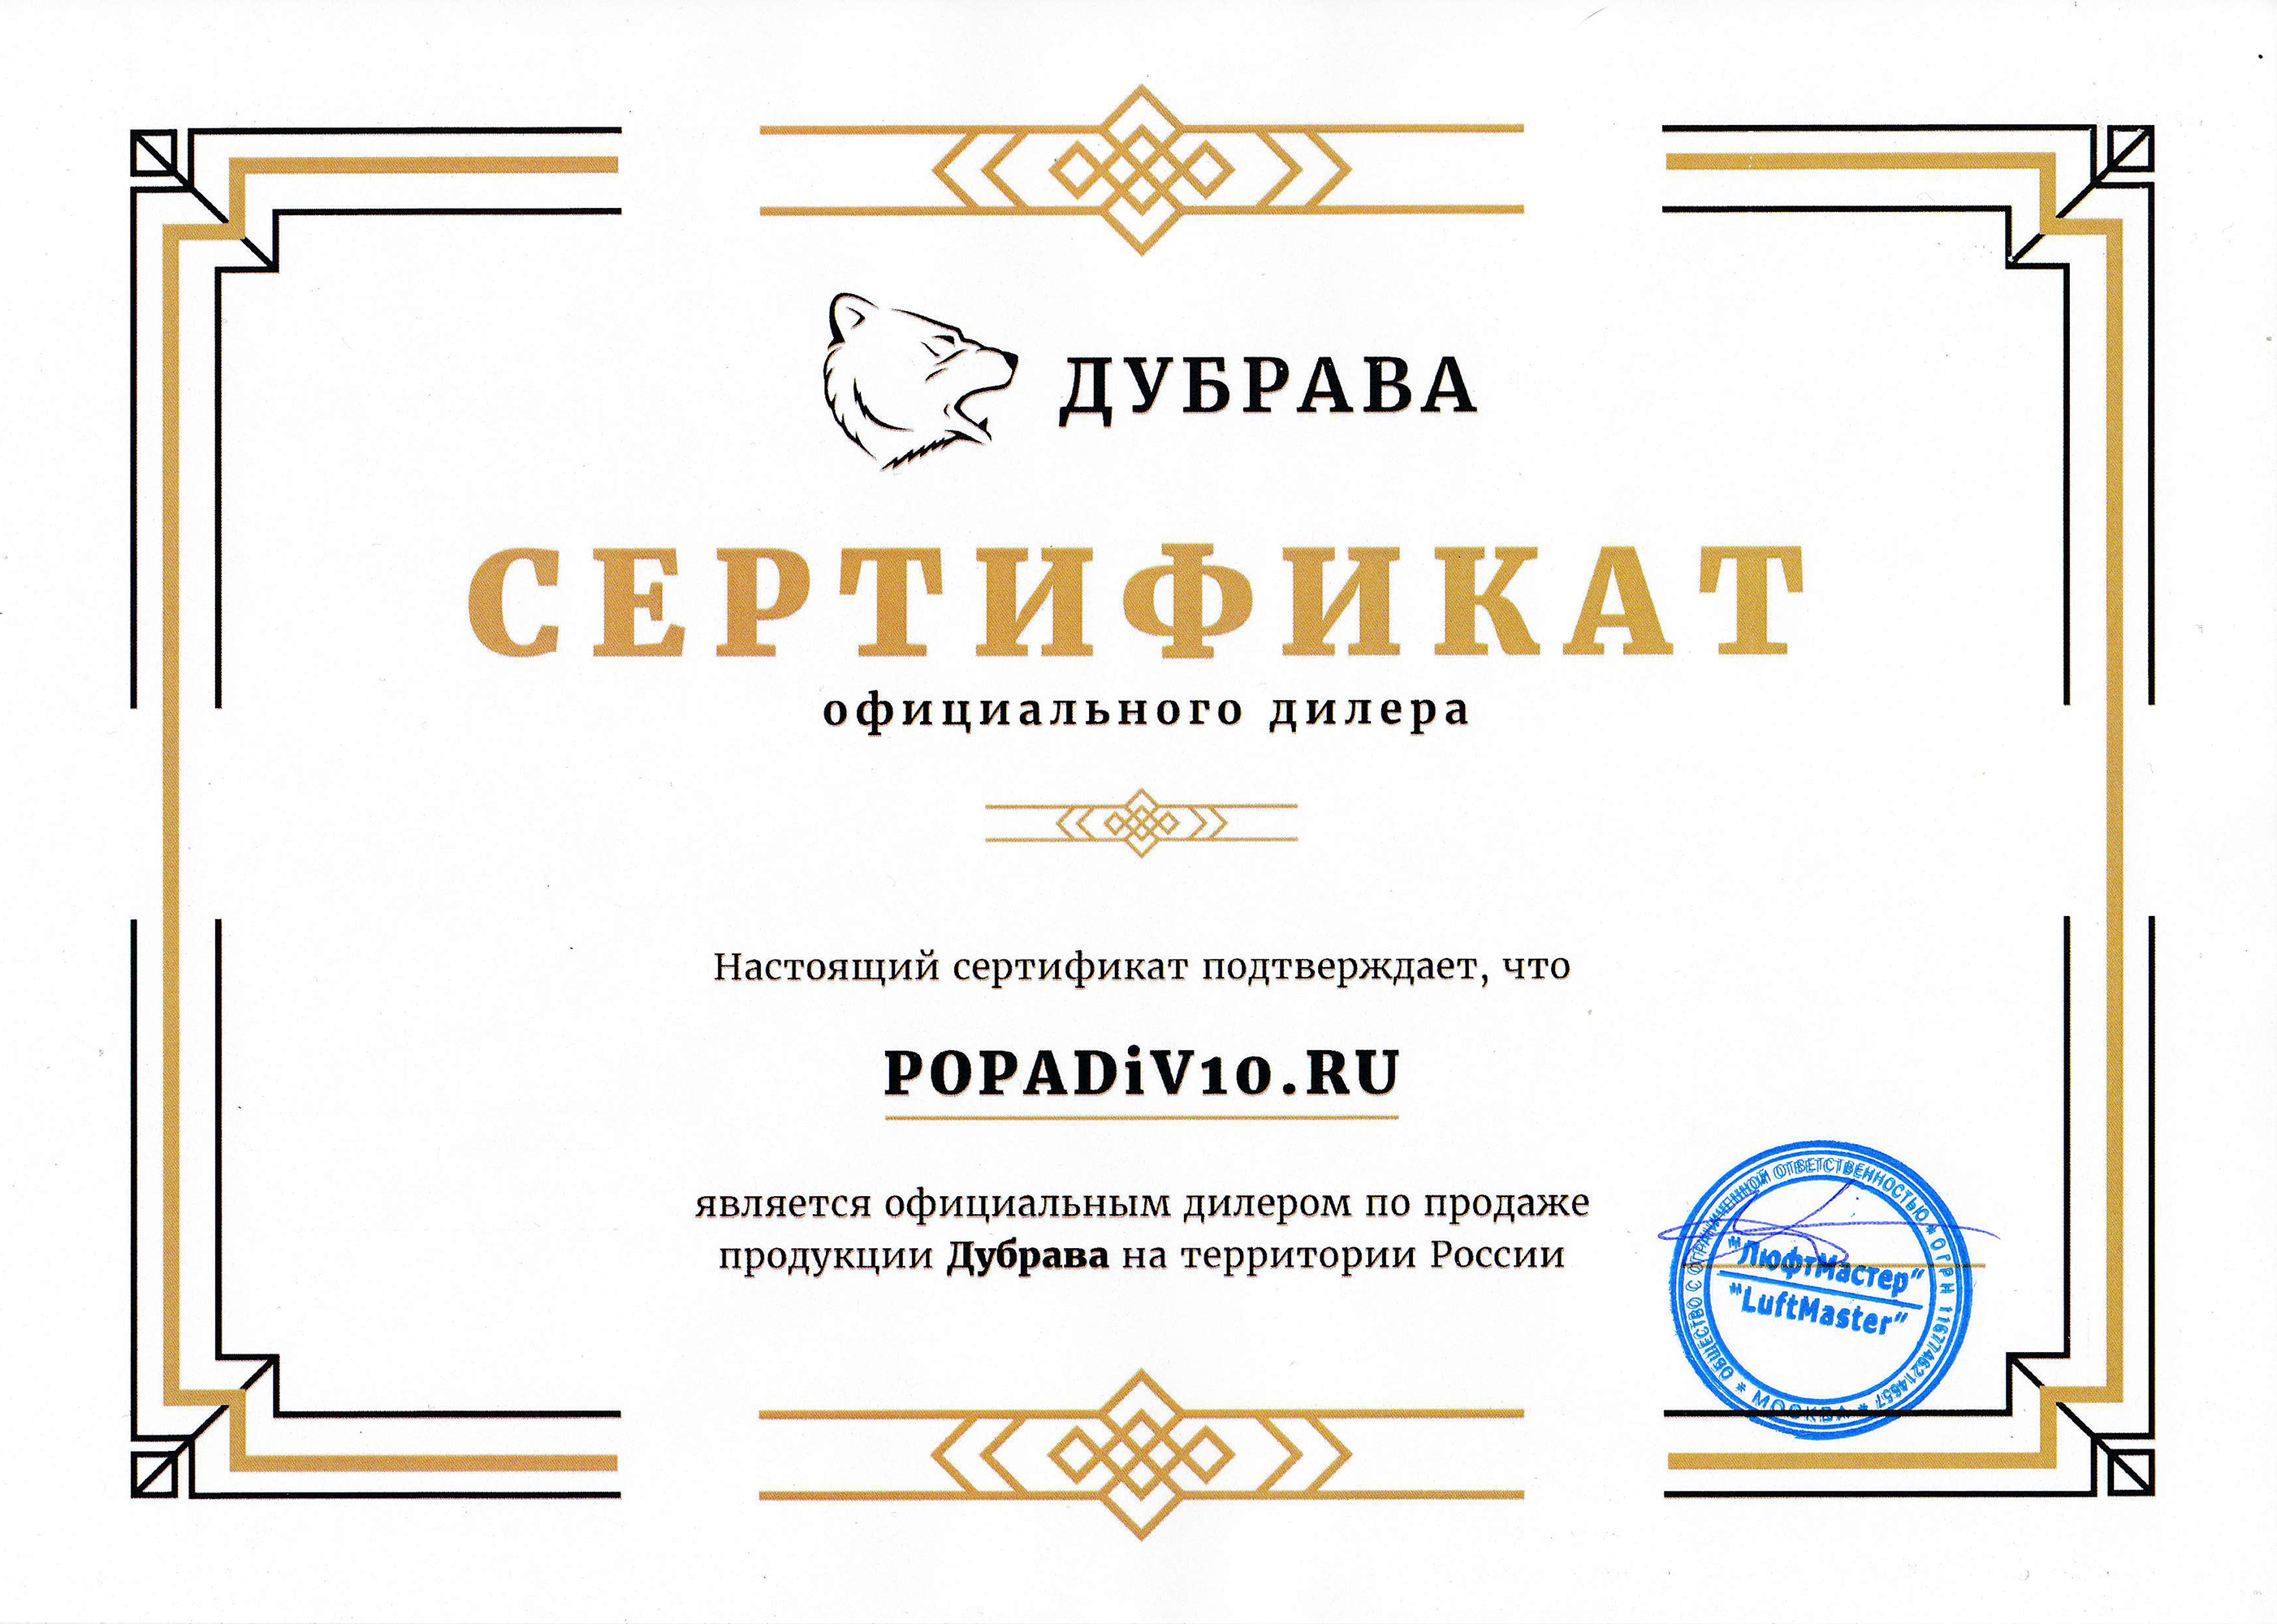 Дубрава - официальный дилер Popadiv10